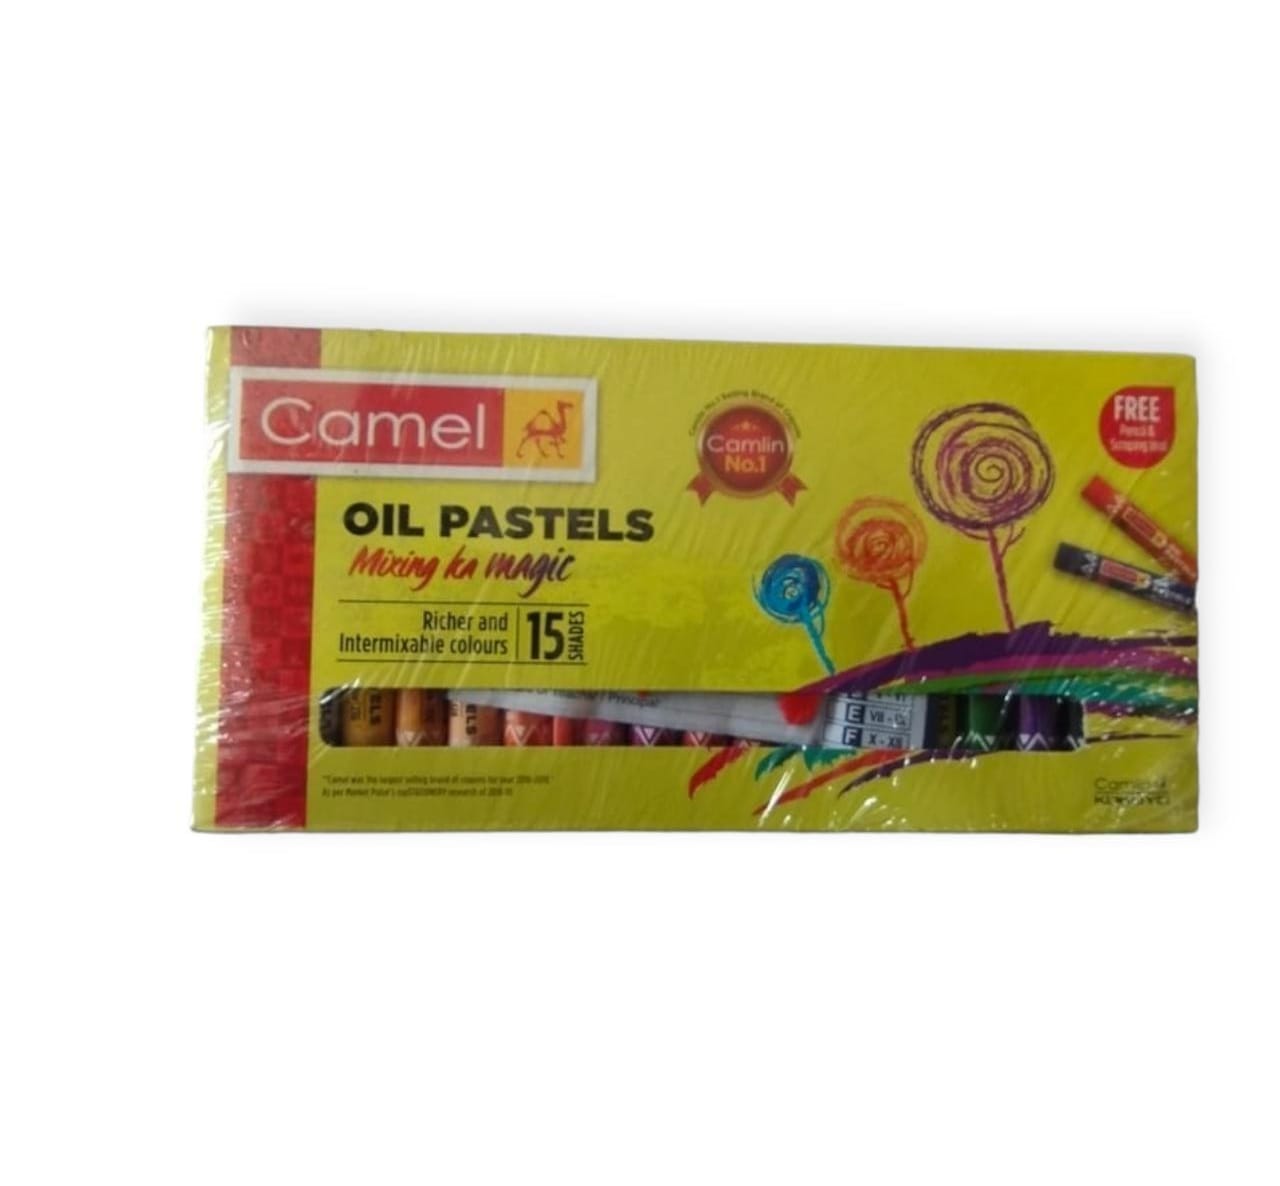 Camel oil pastels 